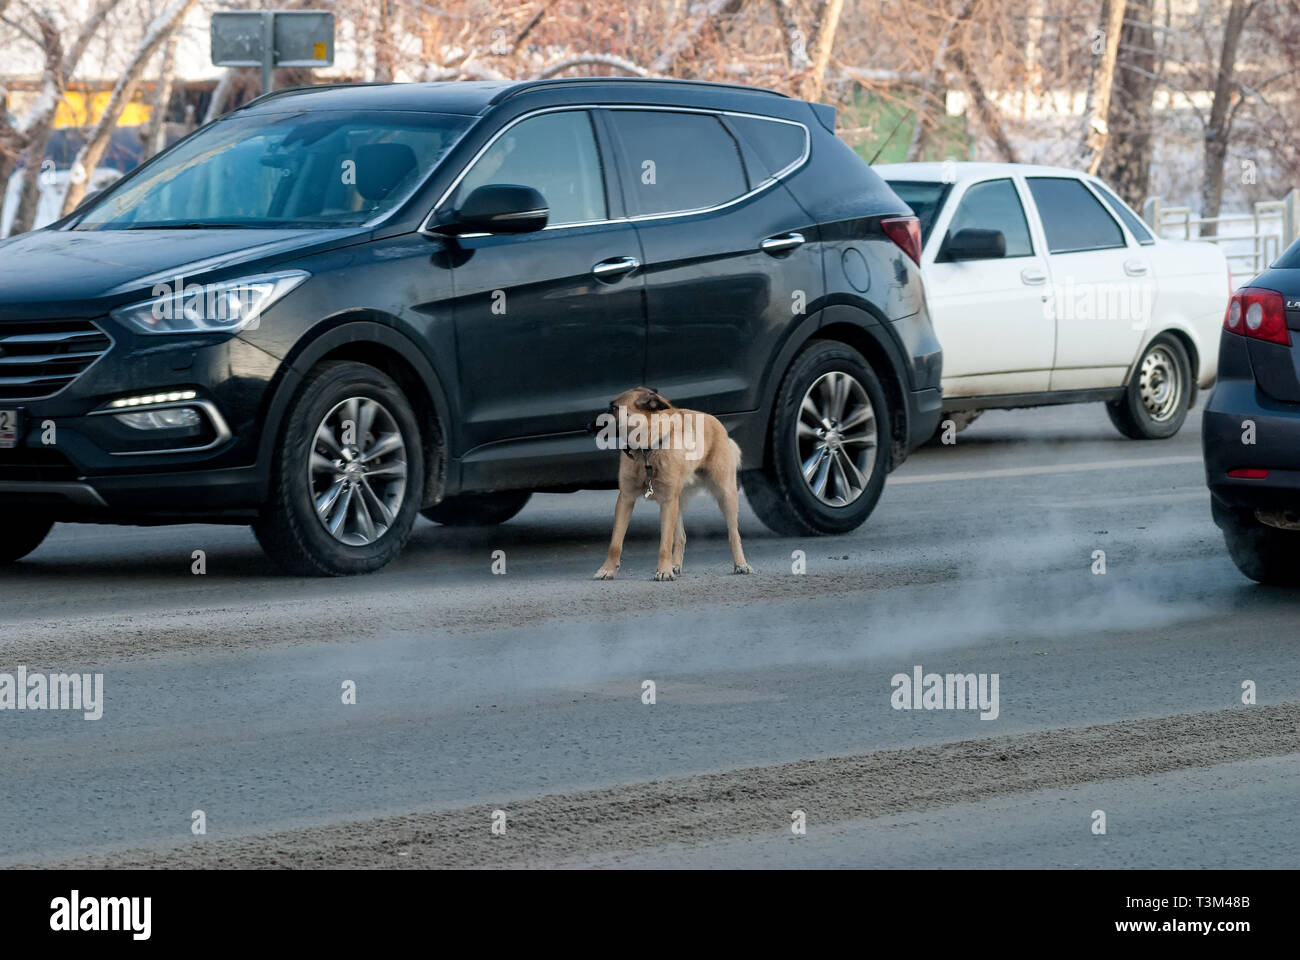 La peur des moutons-chien se précipite sur la route entre les voitures Banque D'Images